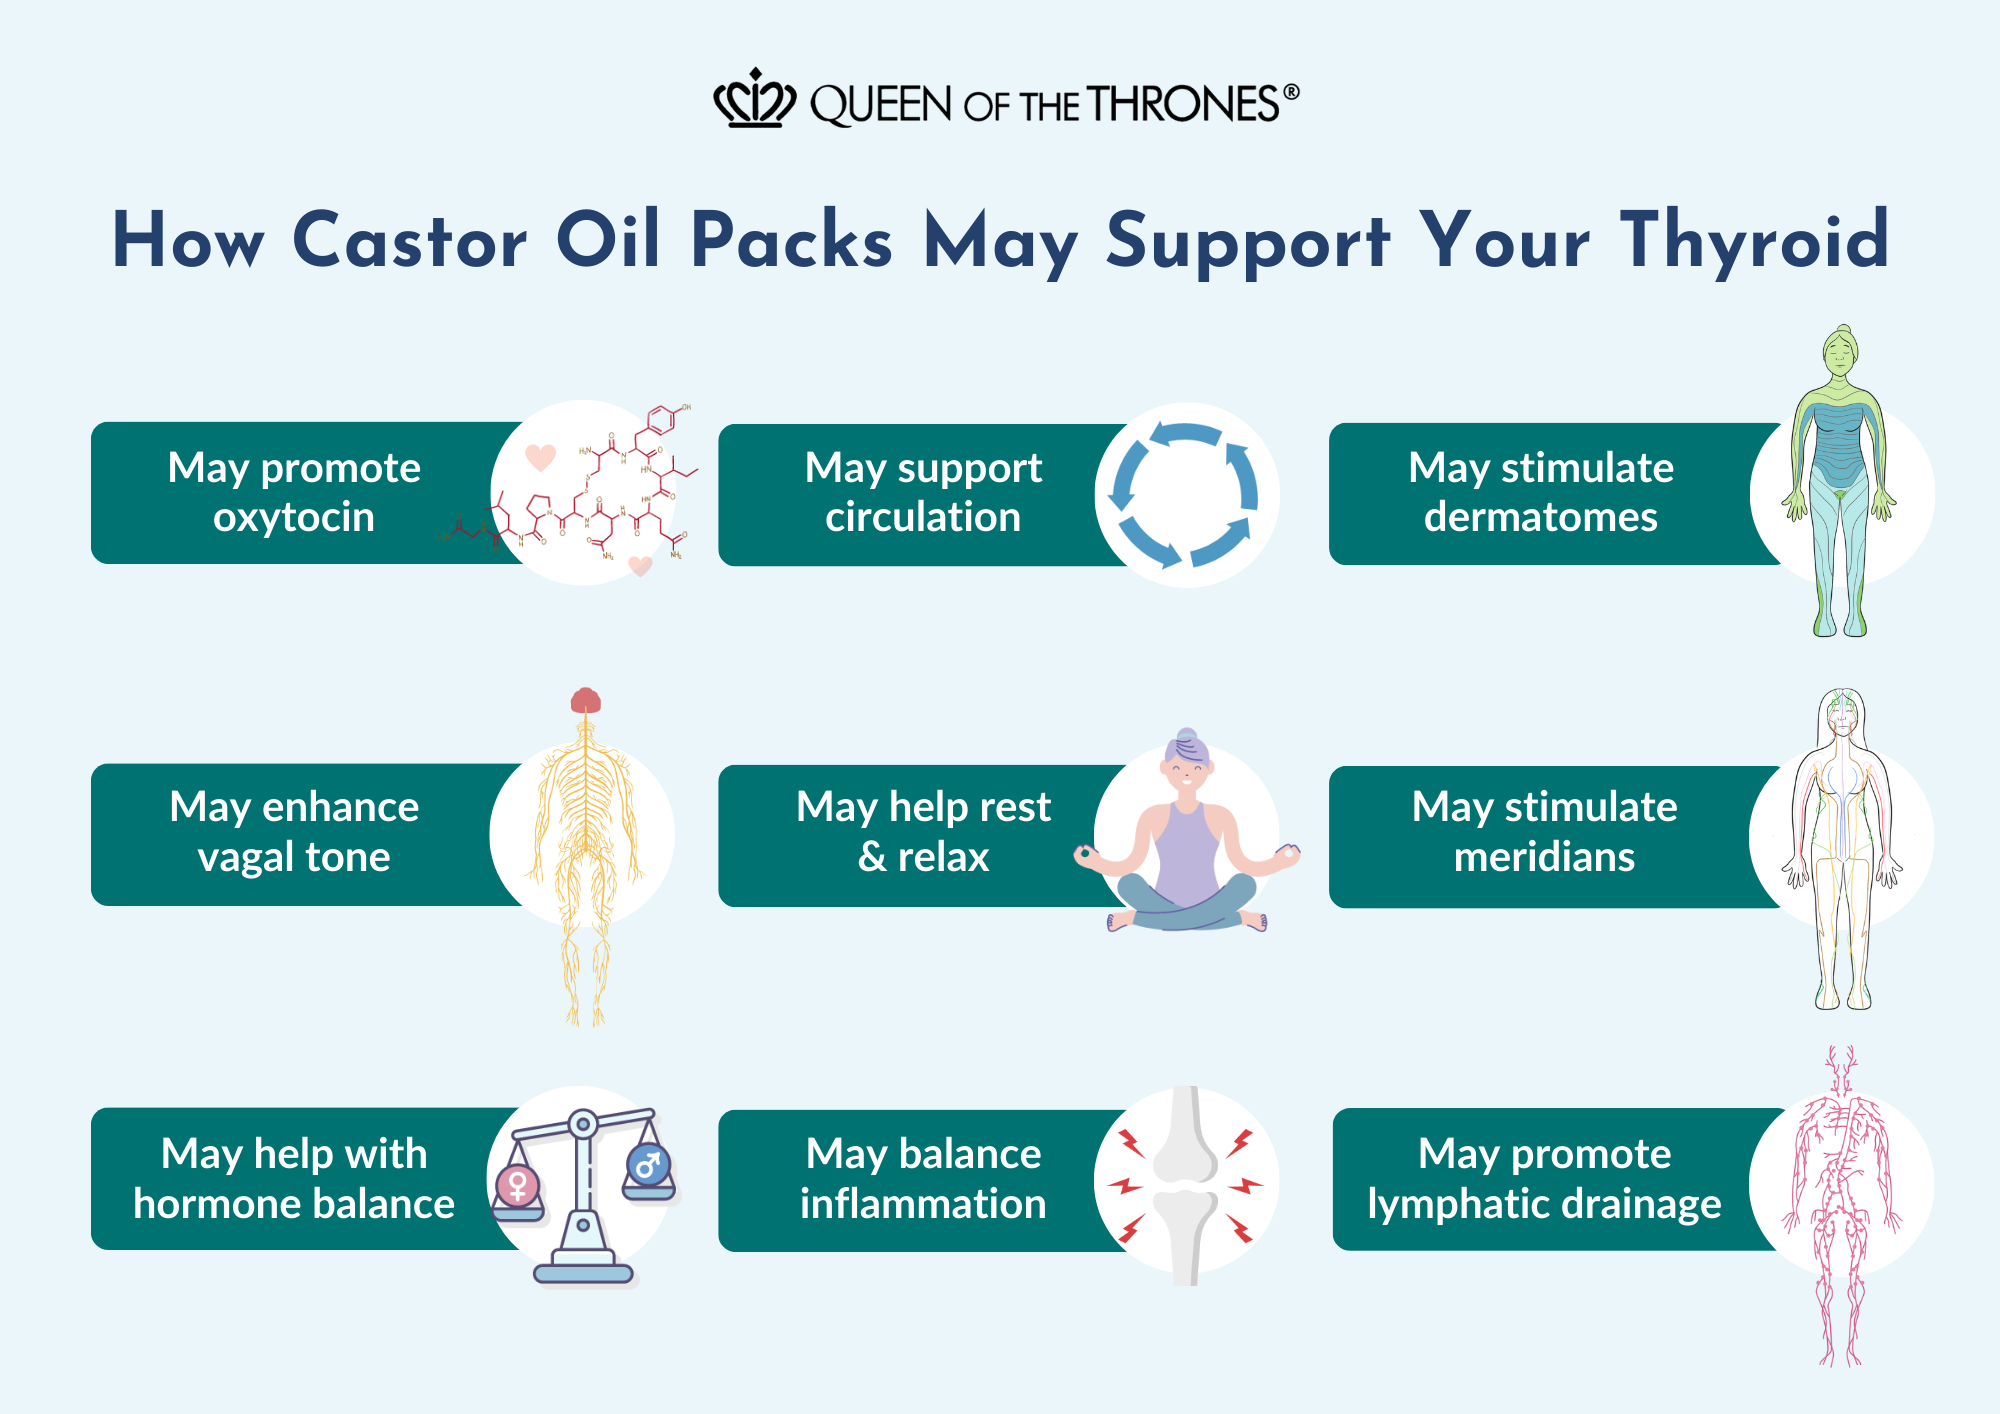 How do Castor Oil Packs support thyroid health